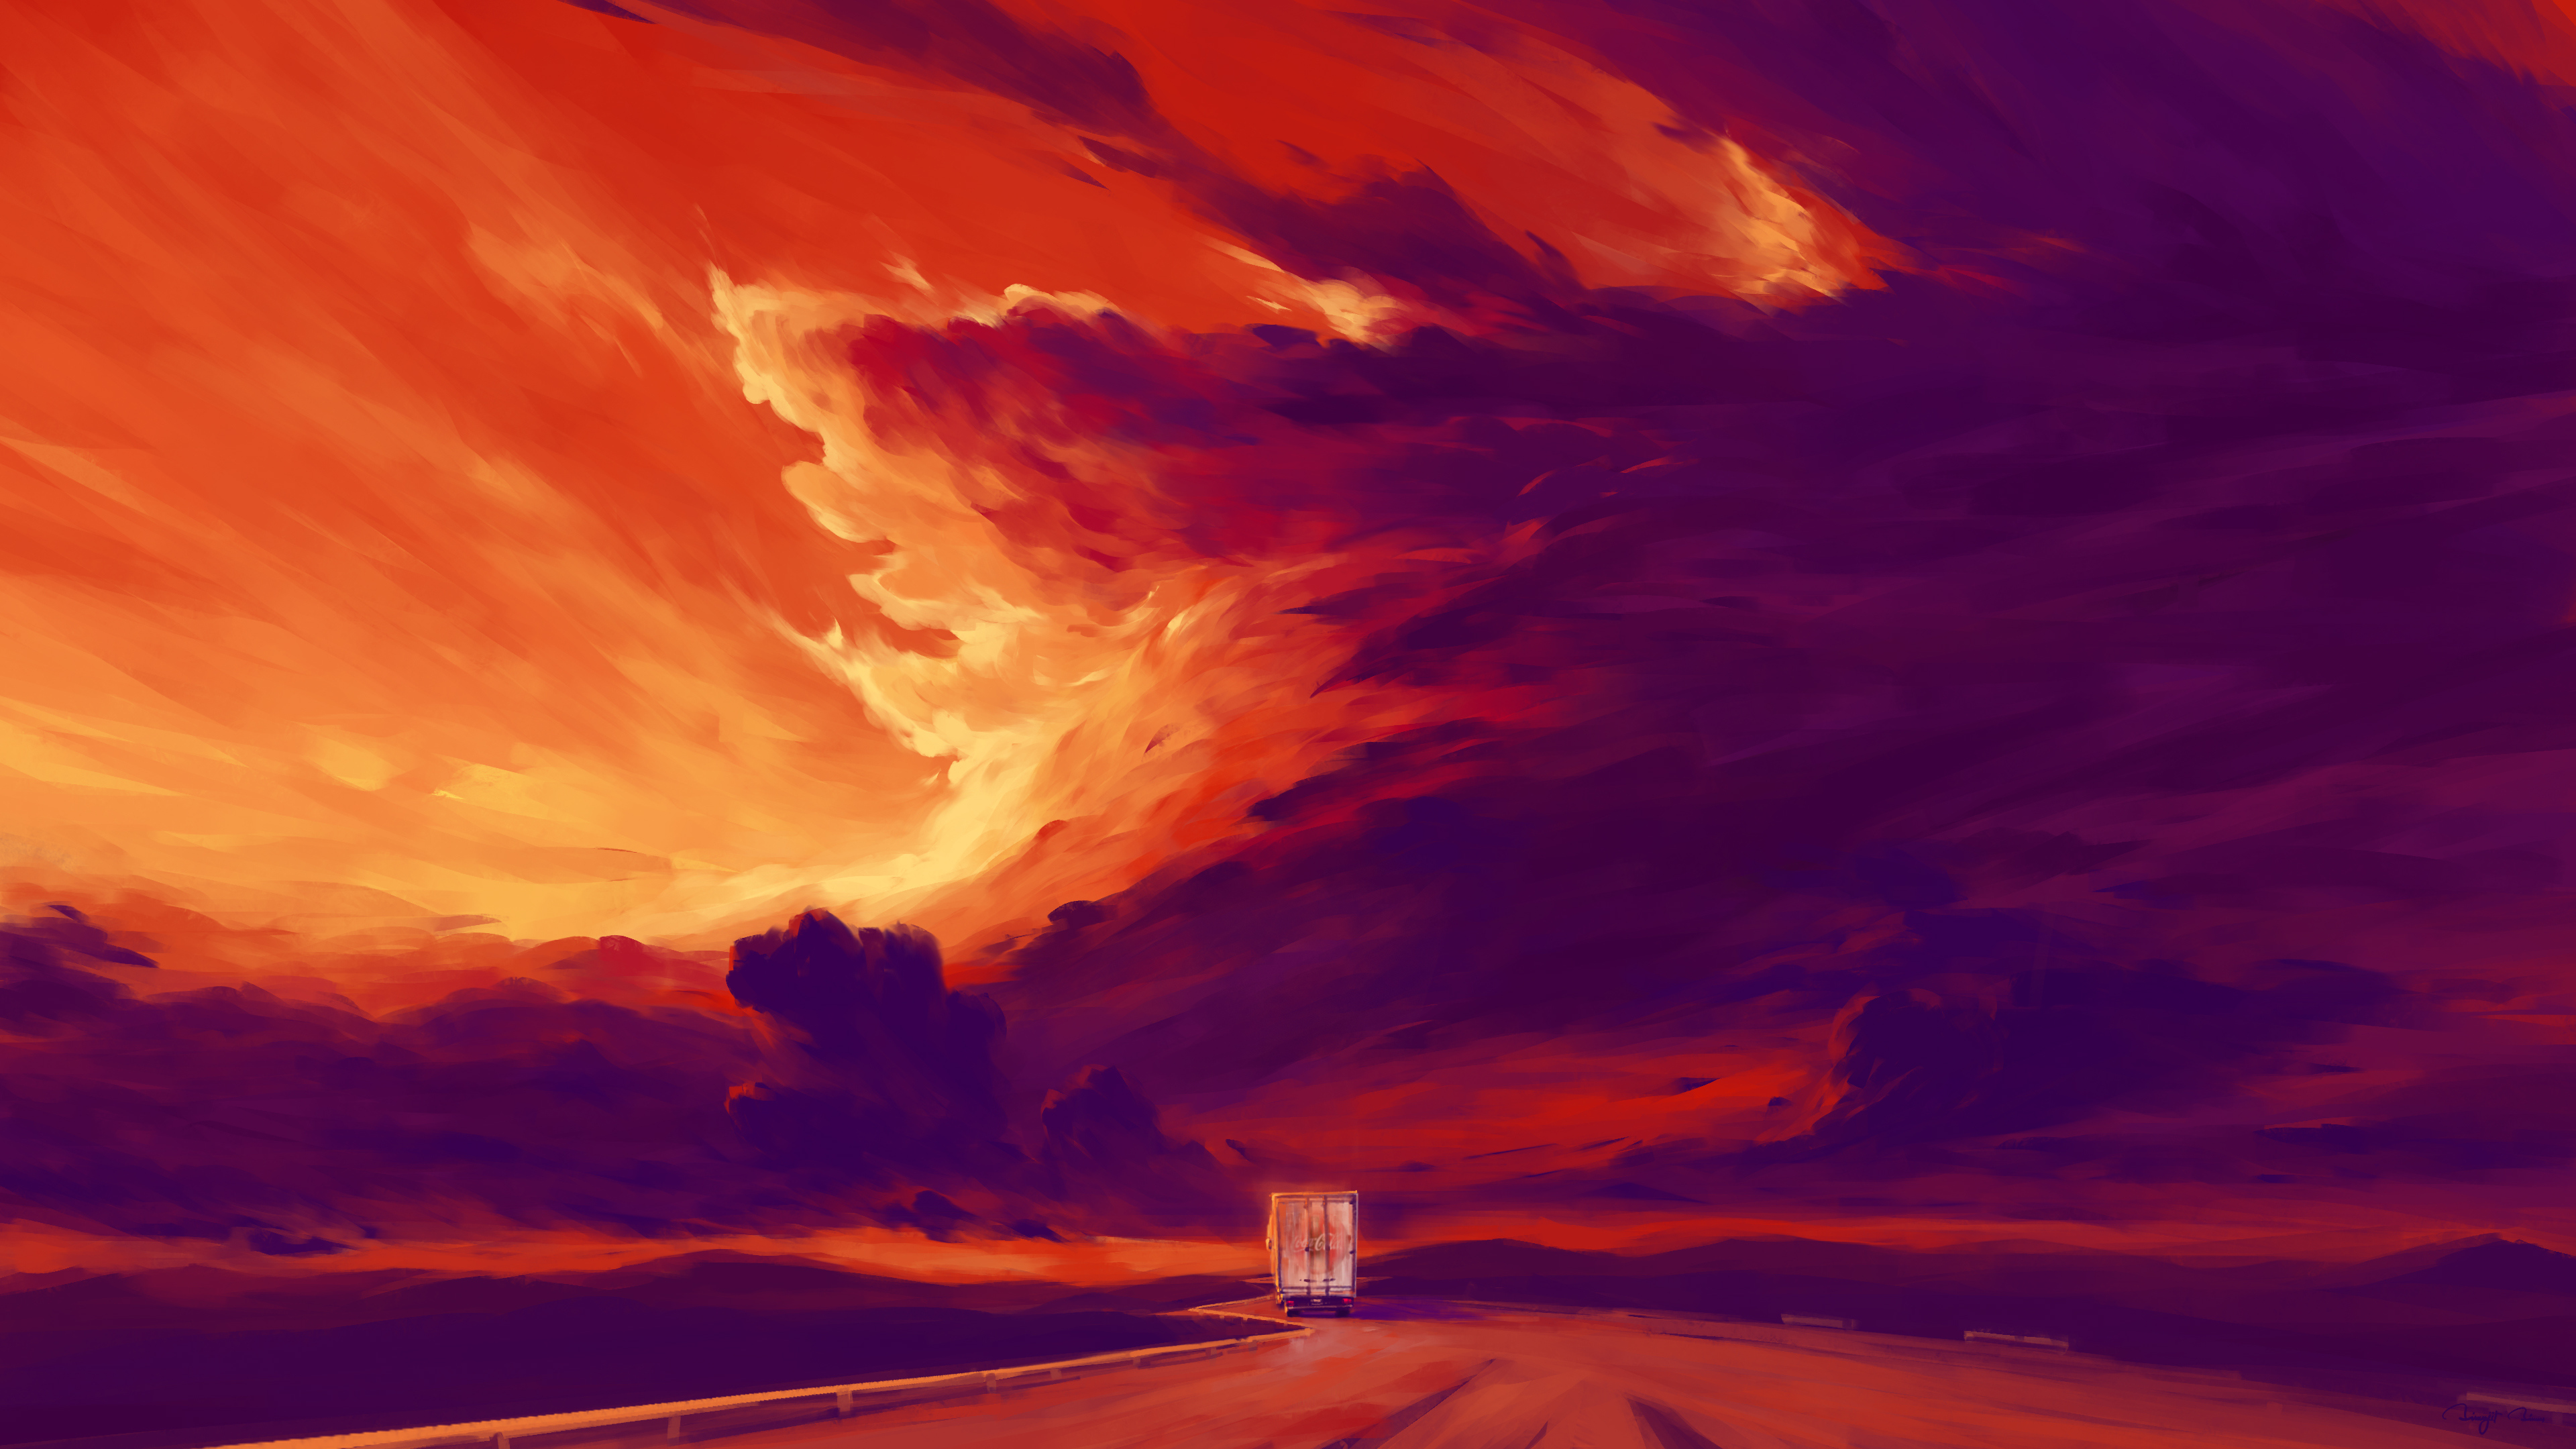 General 3840x2160 BisBiswas landscape clouds sunset road truck digital art artwork illustration painting signature 4K